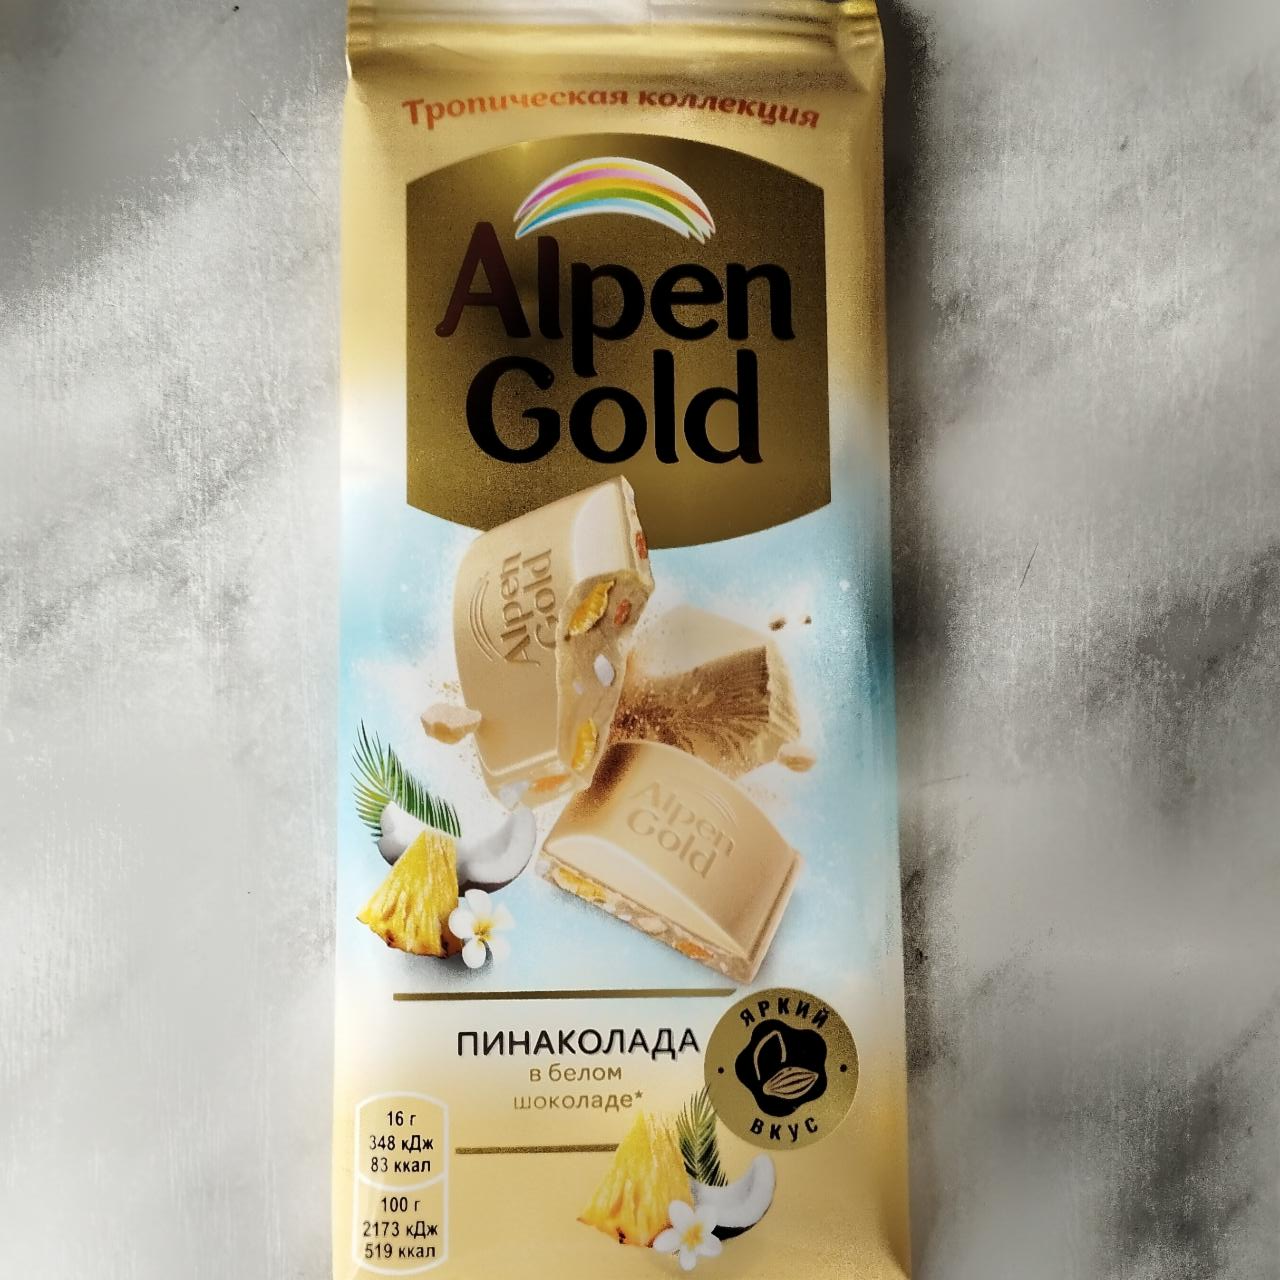 Фото - Шоколад белый пиноколада в белом шоколаде Alpen Gold